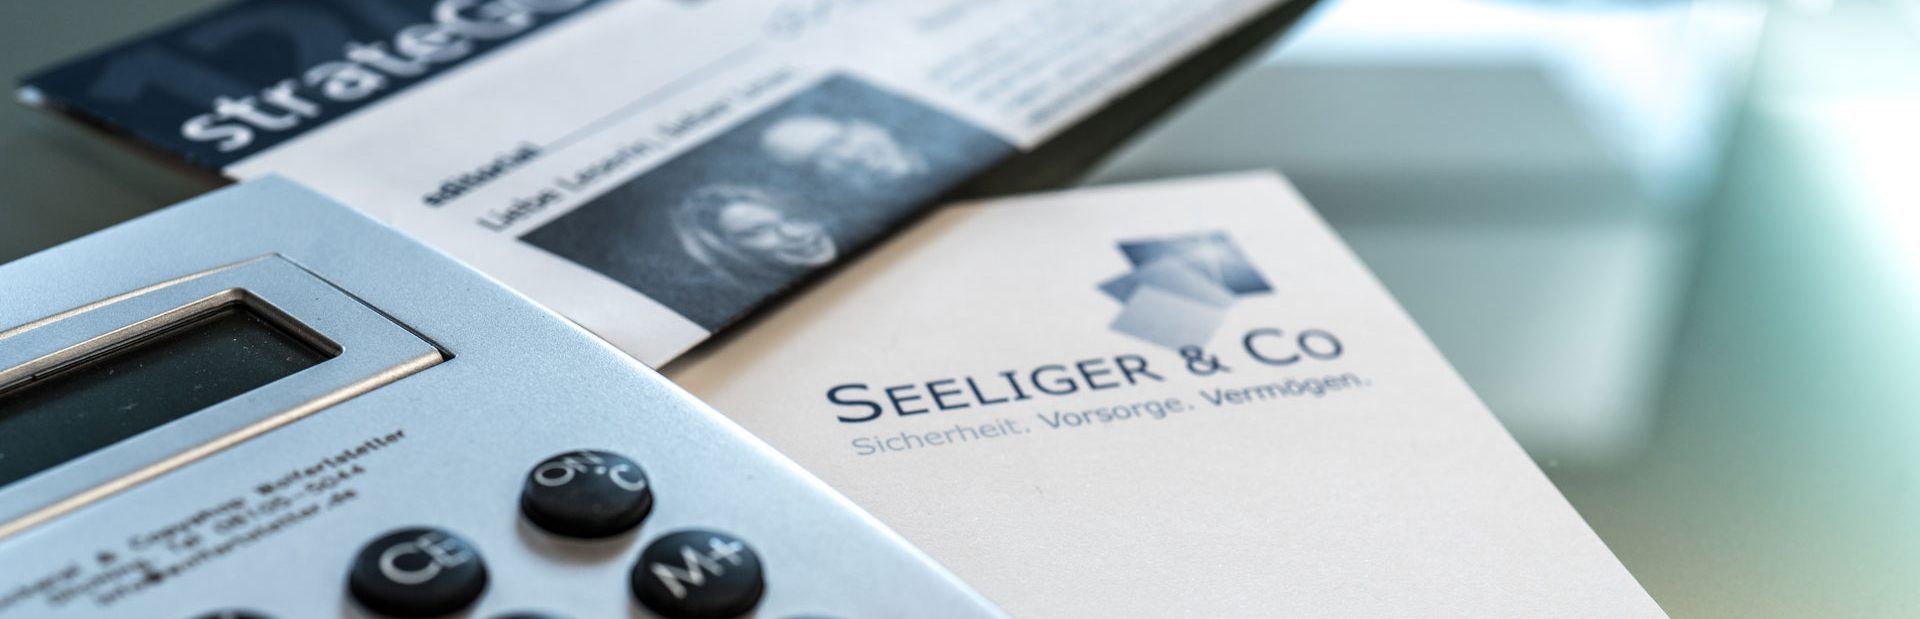 Seeliger & Co. GmbH - Vermögen